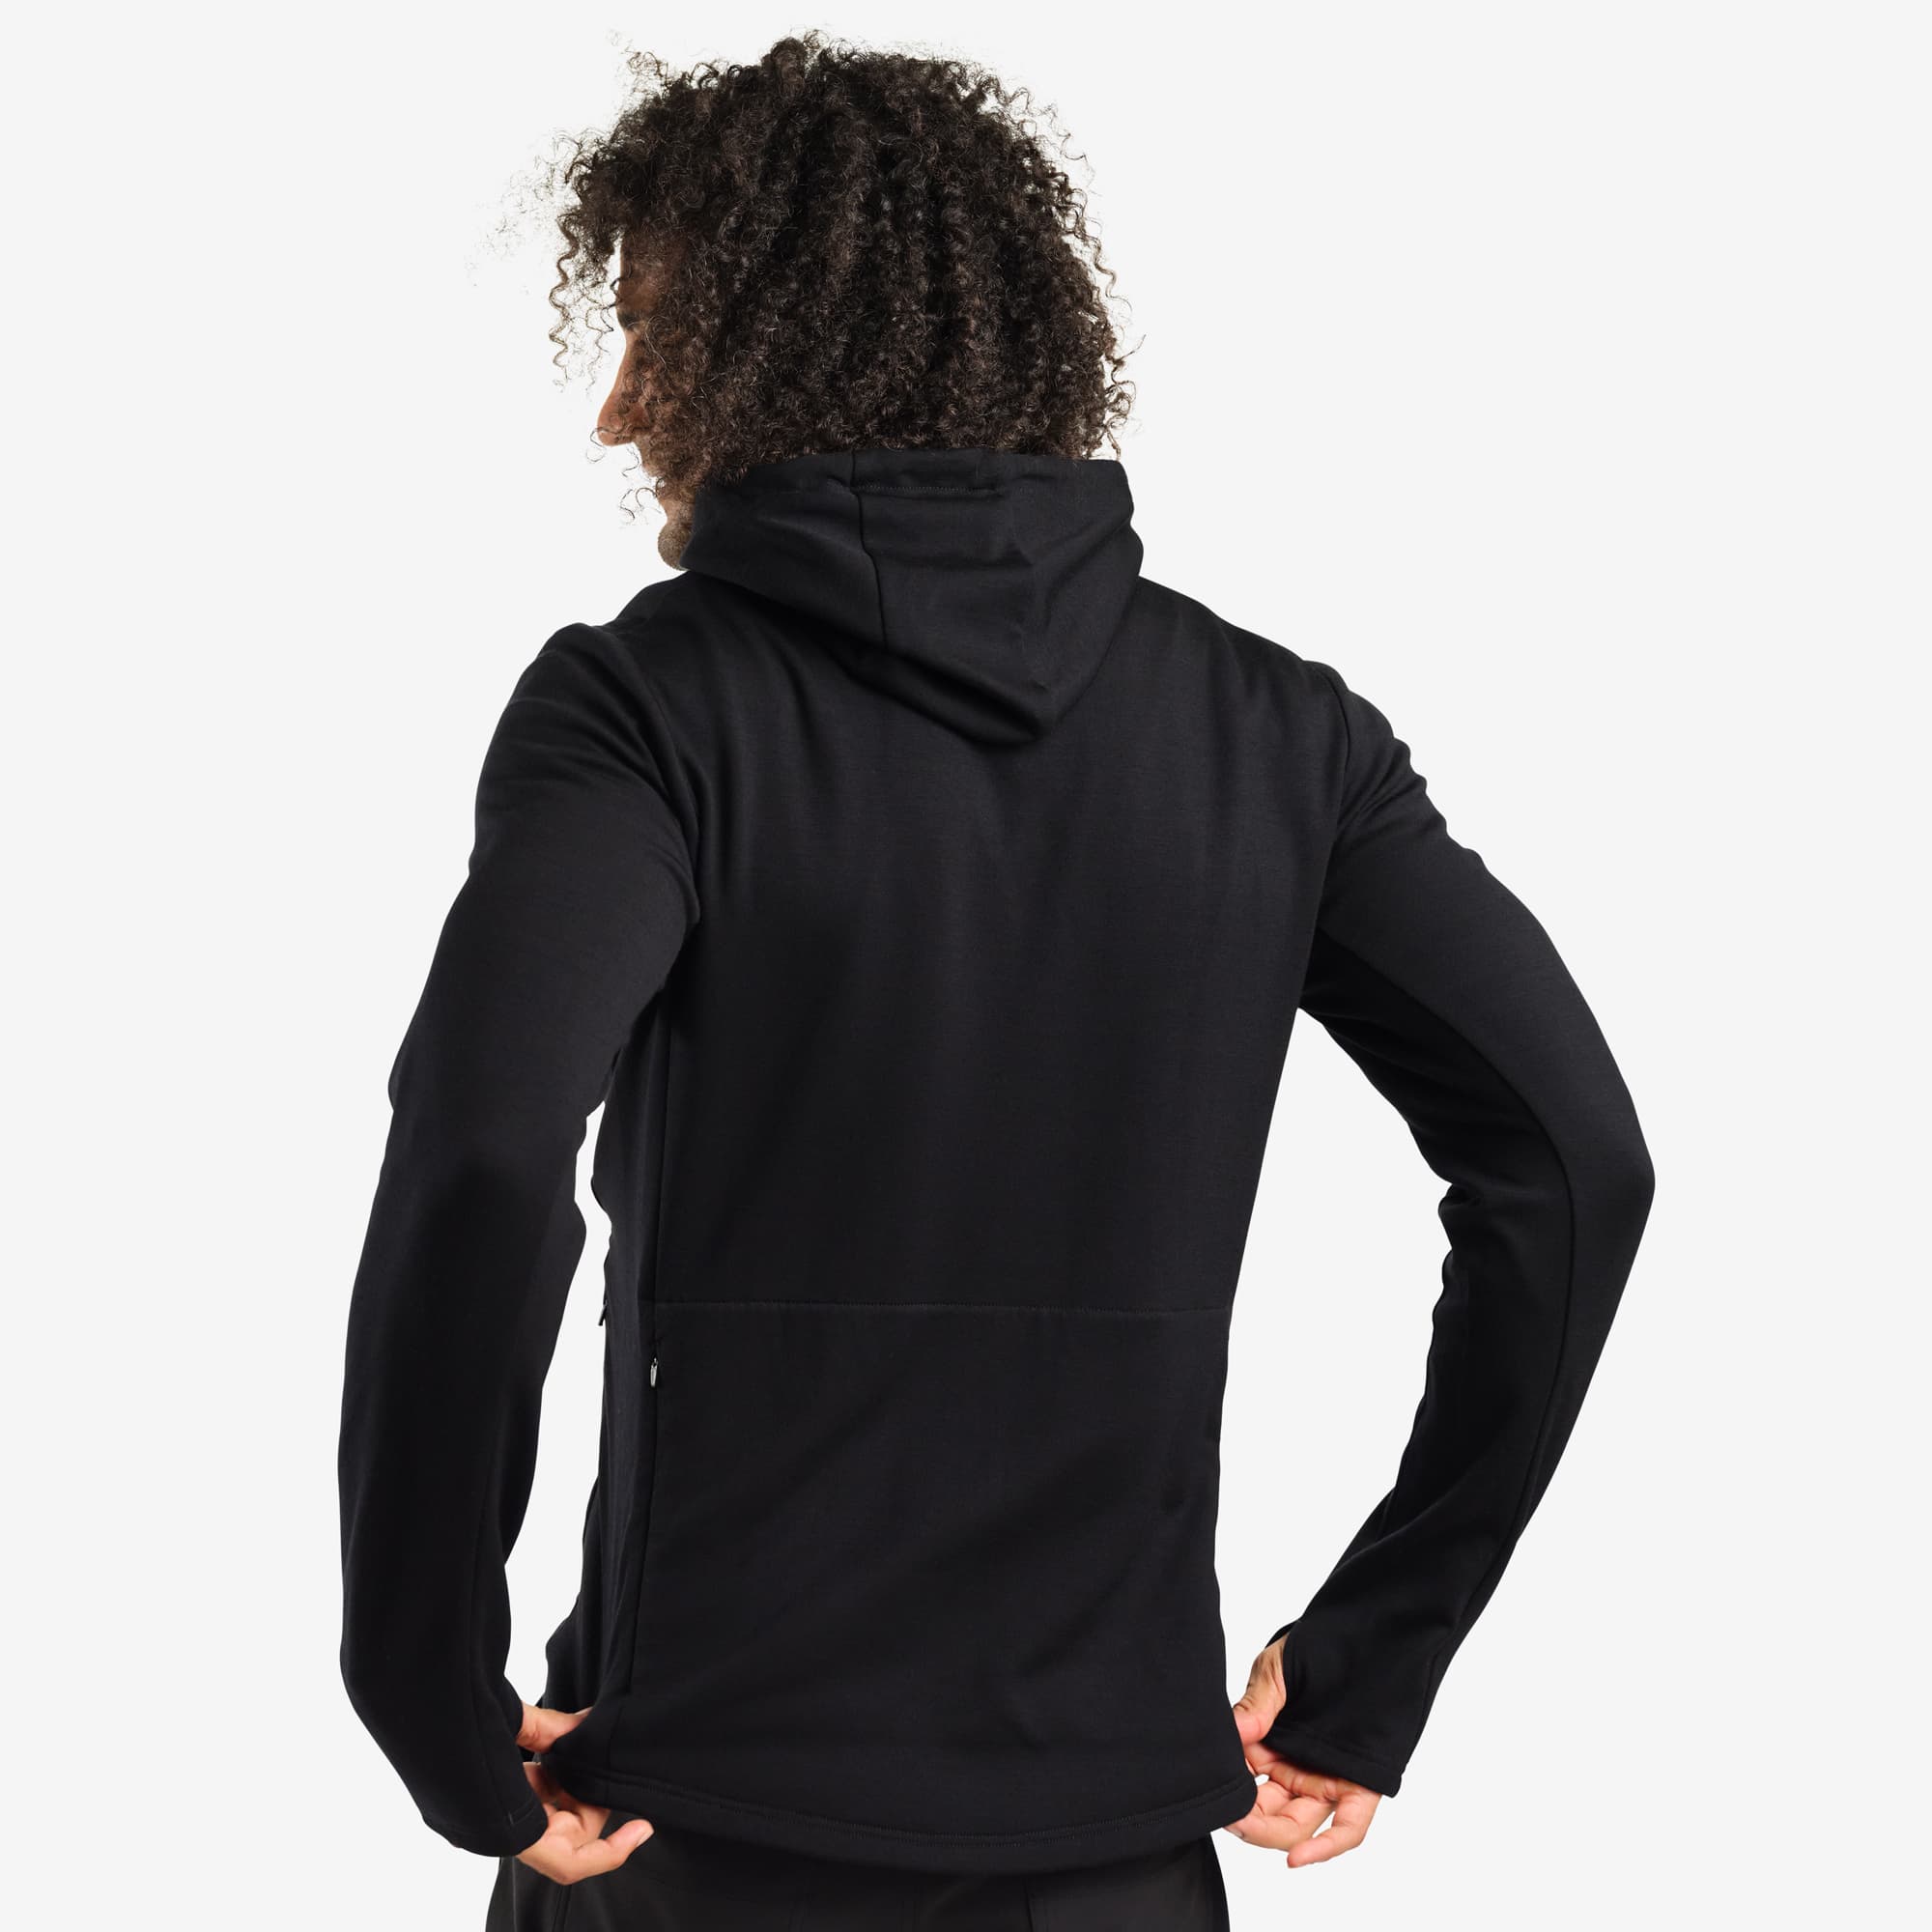 Men's merino blend hoodie in black worn by a man back view #color_black